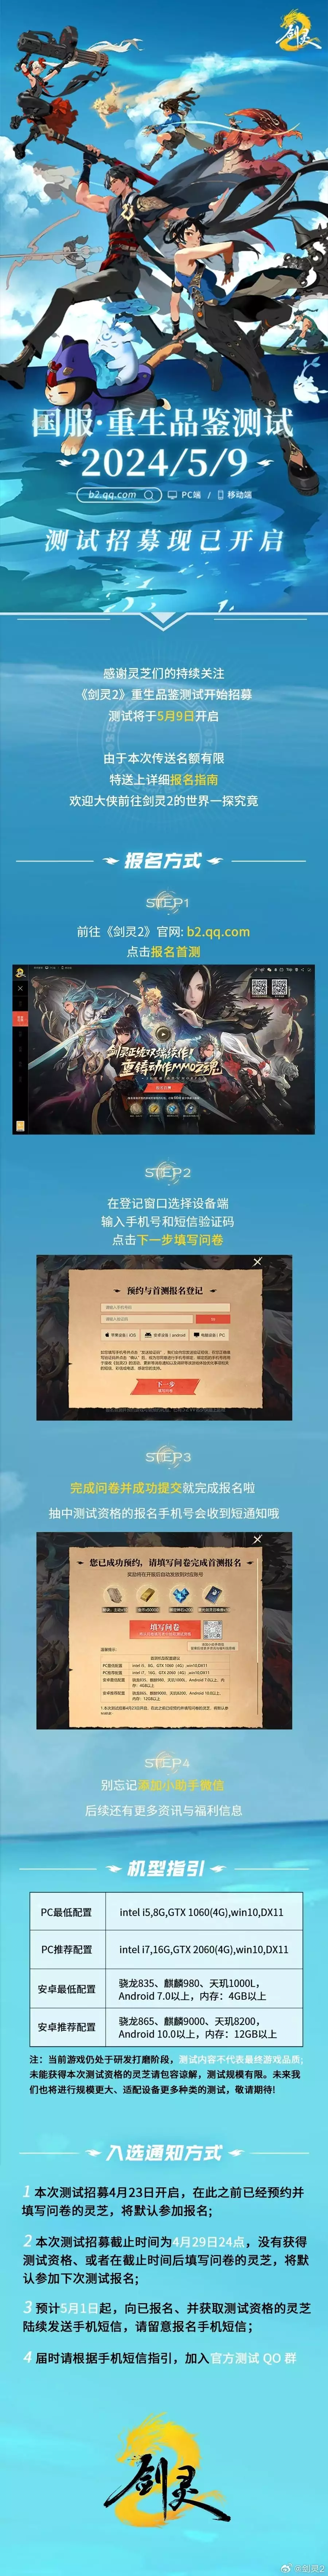 腾讯游戏《剑灵2》新视频国服首测招募开启文章